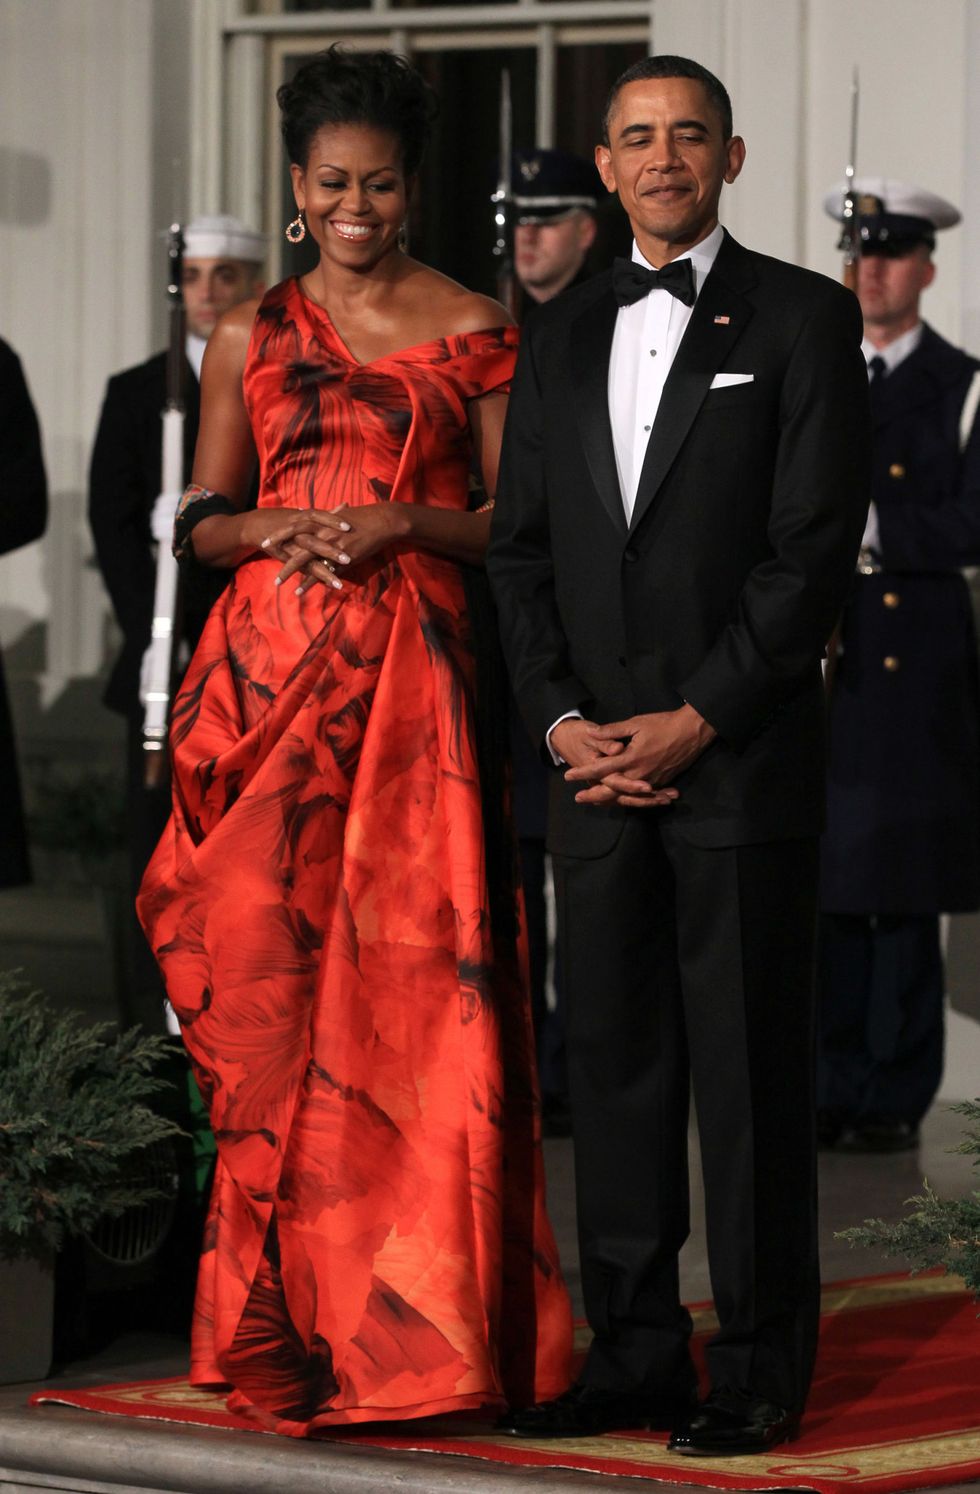 <p>さてさて、そんなミシェルが過去に物議を醸し出したドレスがこちら。2011年、同じく中国の胡錦濤国家主席を迎えた晩餐会でのこと。彼女が選んだのはイギリスのブランド「Alexander McQueen」（アレキサンダー・マックイーン）の、中国国旗を思わせる鮮やかなレッド。しかし、米国ファッション協議会CFDAの代表ダイアン・フォン・ファステンバーグとオスカー・デ・ラ・レンタは「アメリカのデザイナーによる服を公式の場で着ないとは」と、批判。こんな珍しい絶妙な赤だったら着てもいいじゃない！ なんて私は思ってしまいましたが。渦中の本人は、自身のファッションにはコメントしない主義なので、このドレスがふさわしいか否かは捉え方次第ということに。</p>